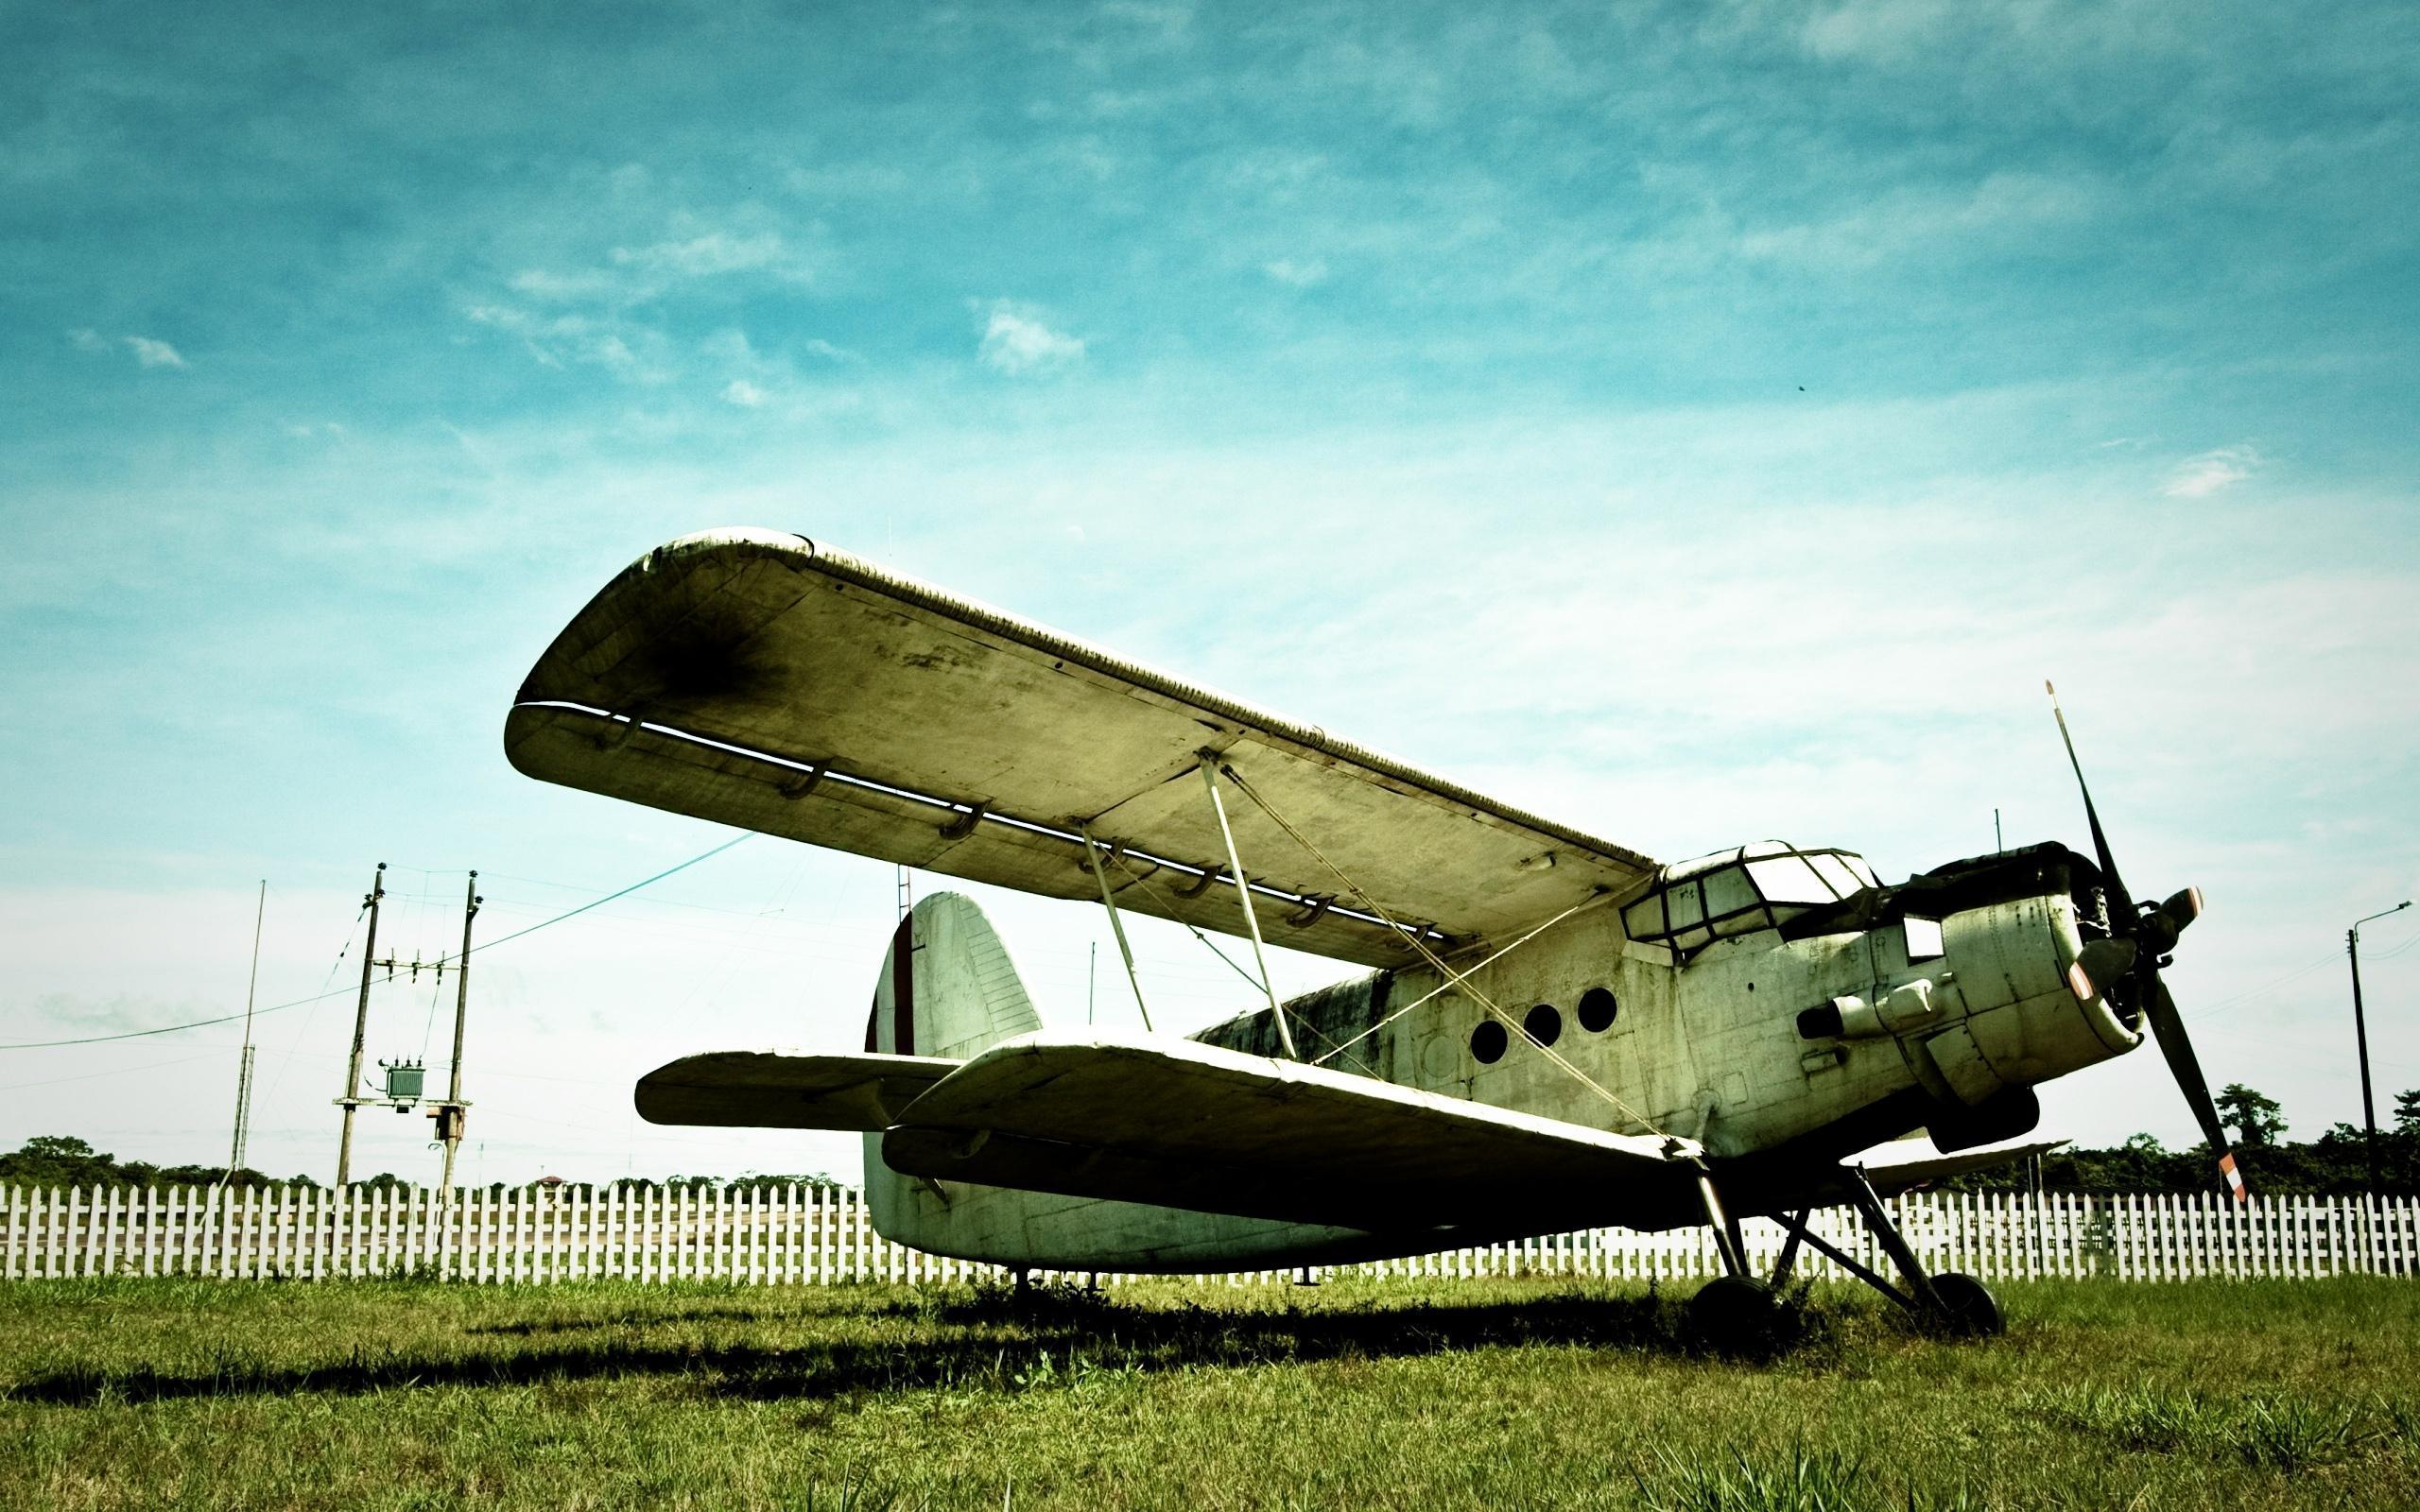 قاب هنری هواپیمای قدیمی فرسوده برای عکس نوشته